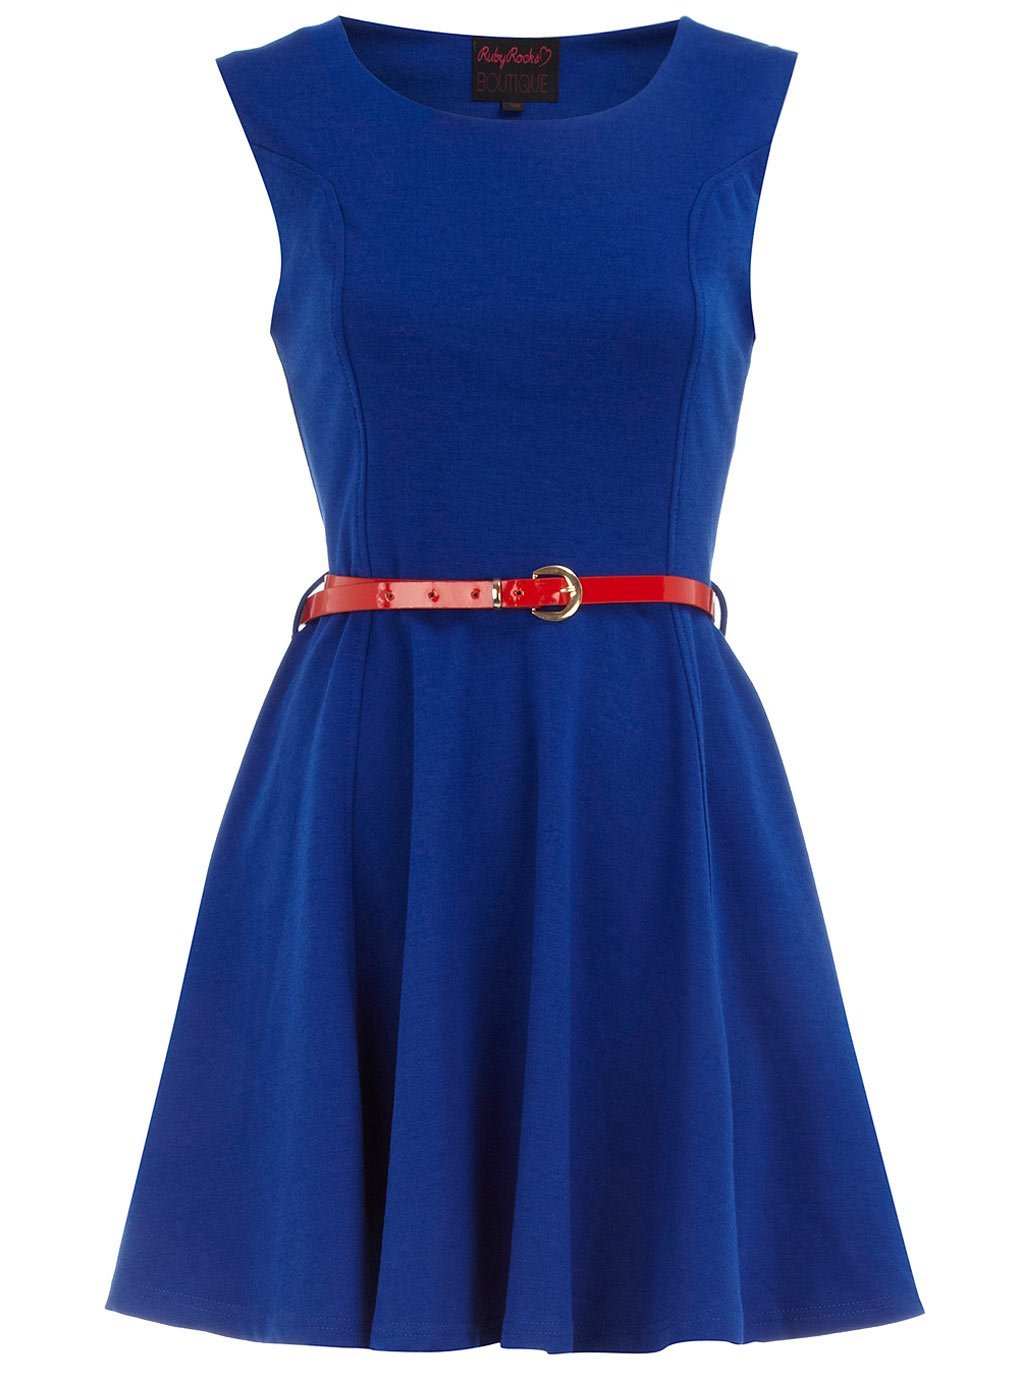 Платье без пояса. Miss Selfridge платье синее. Голубое платье. Синее платье с поясом. Ремень для платья.